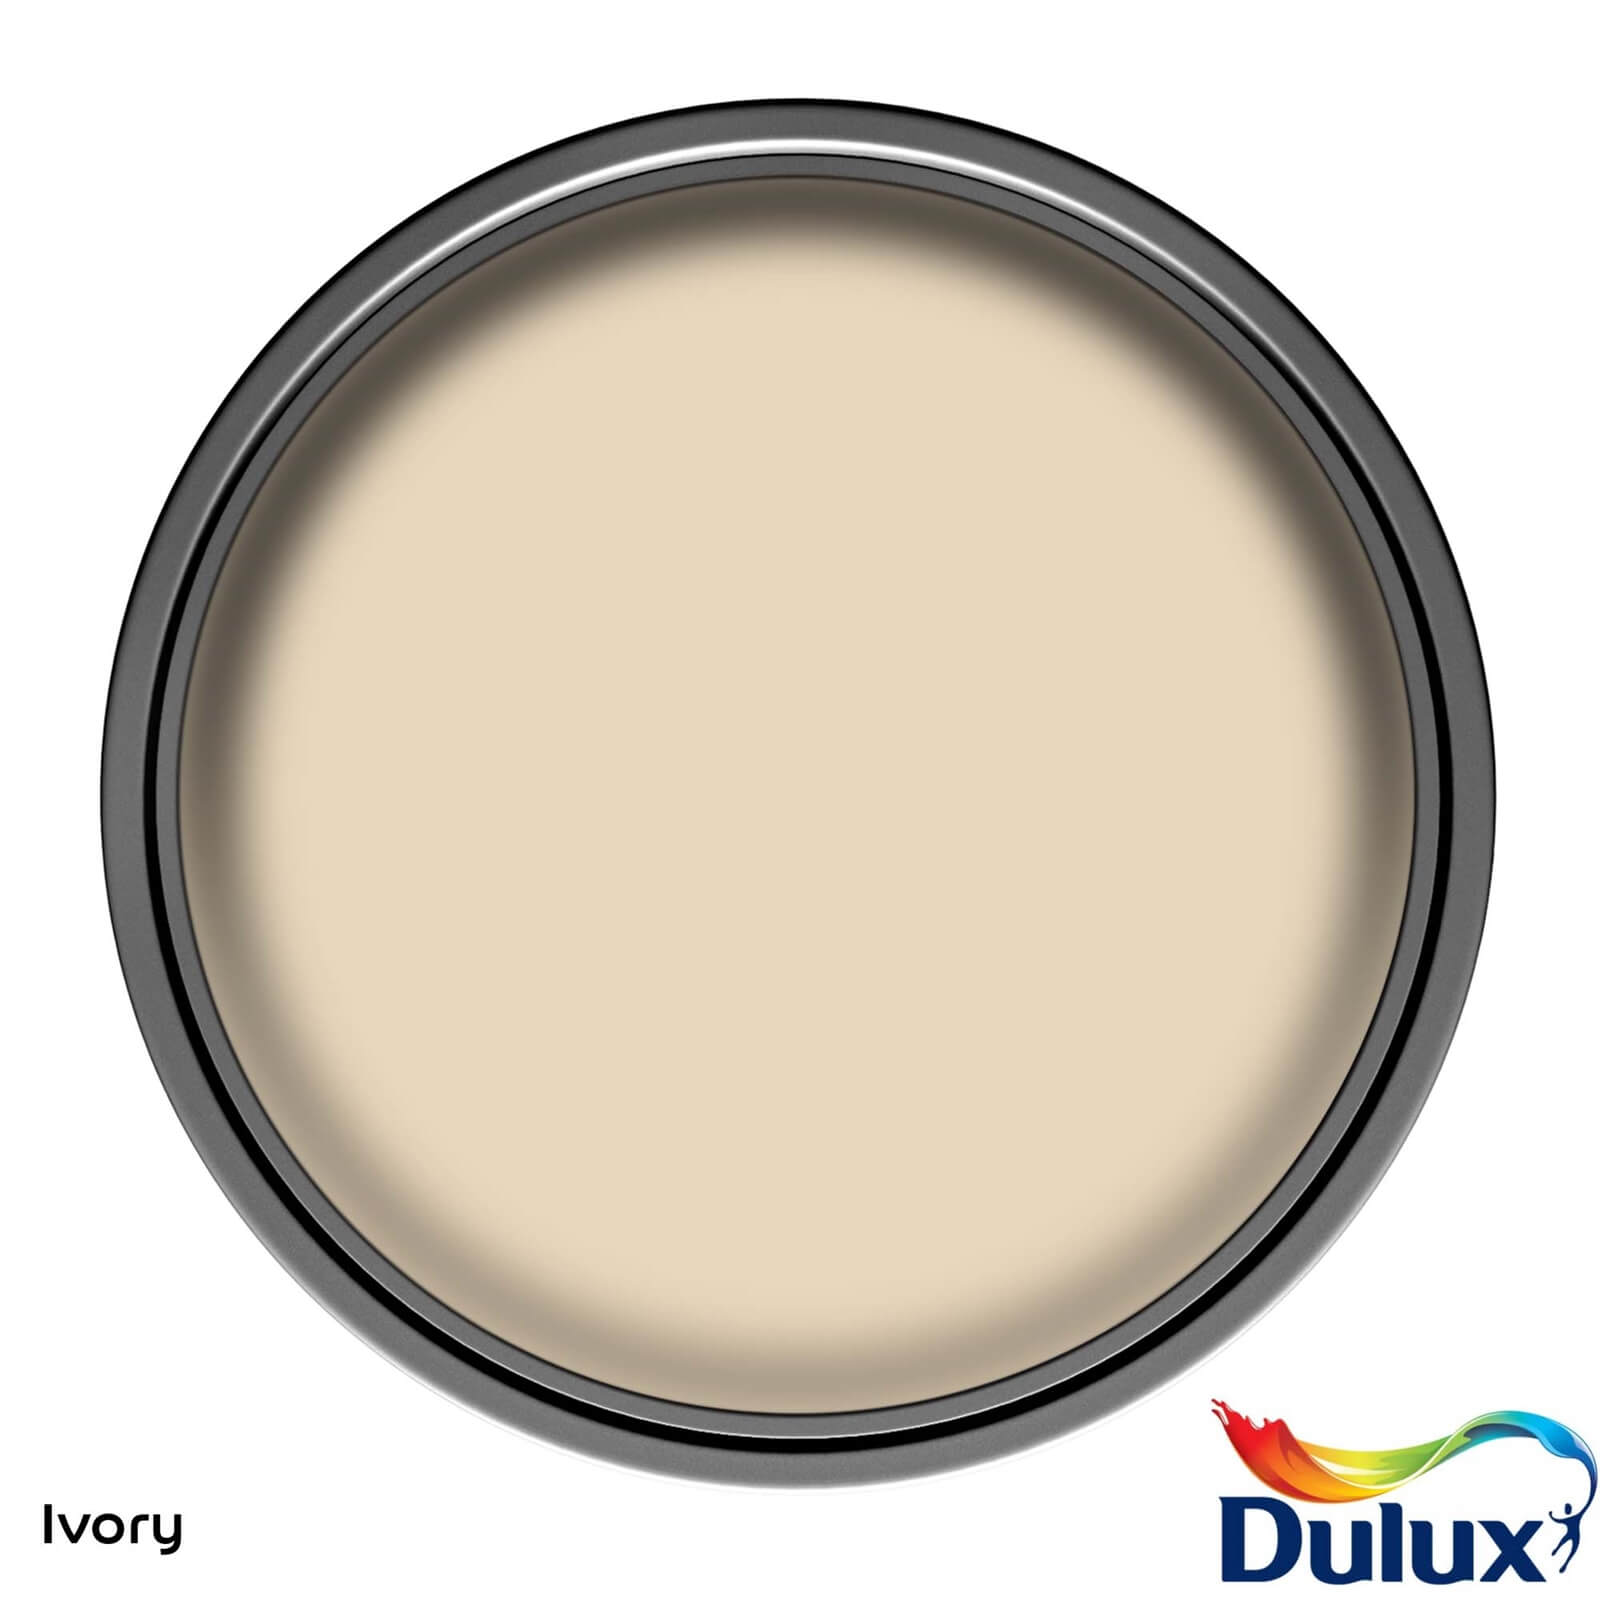 Dulux Easycare Washable & Tough Matt Paint Ivory - 2.5L